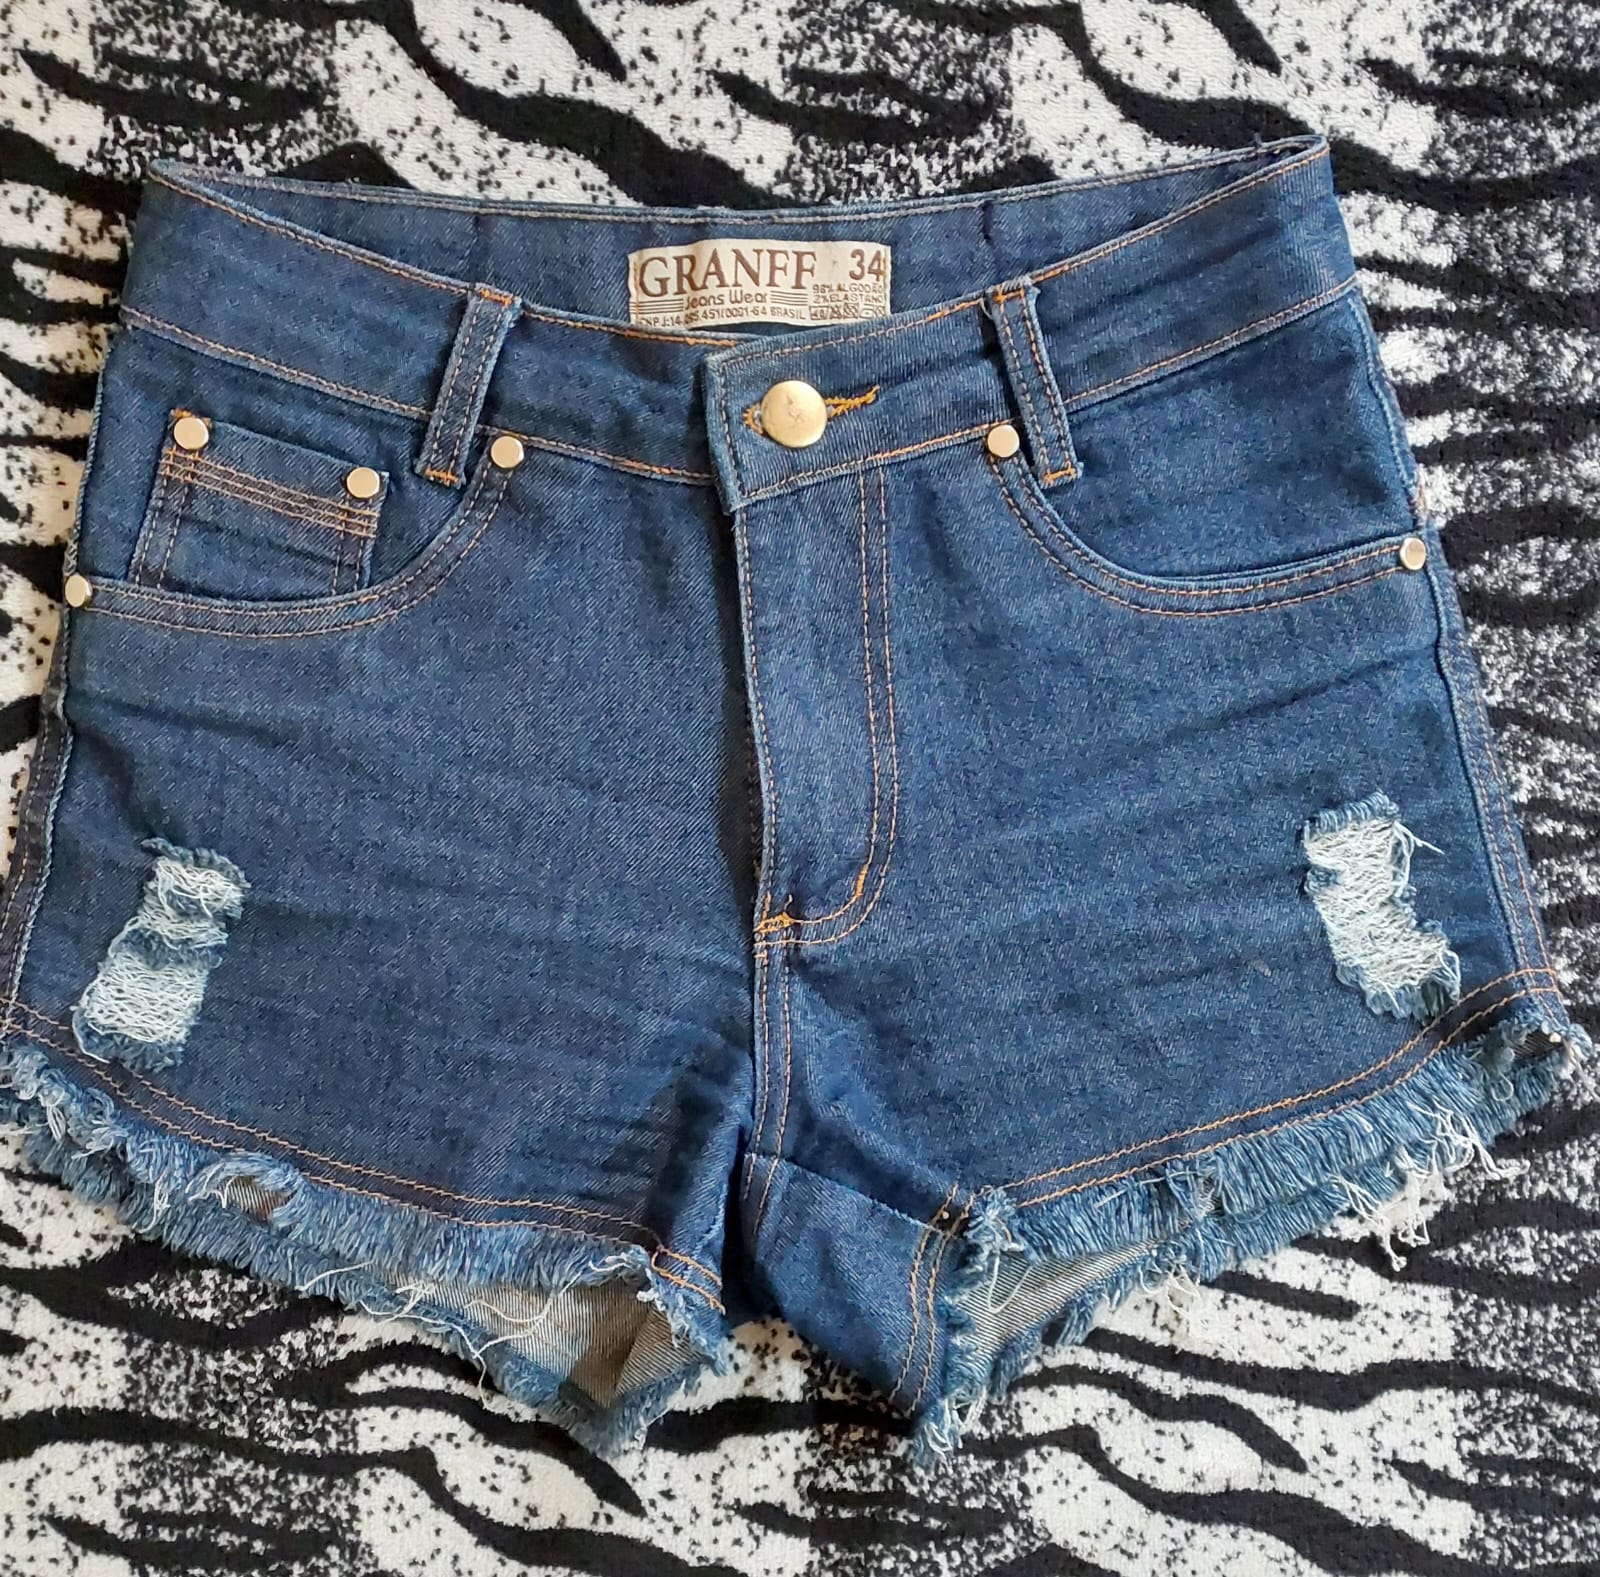 COD: 10419L – Shorts Jeans, marca Granff, tamanho 34, em algodão e elastano, seminovo